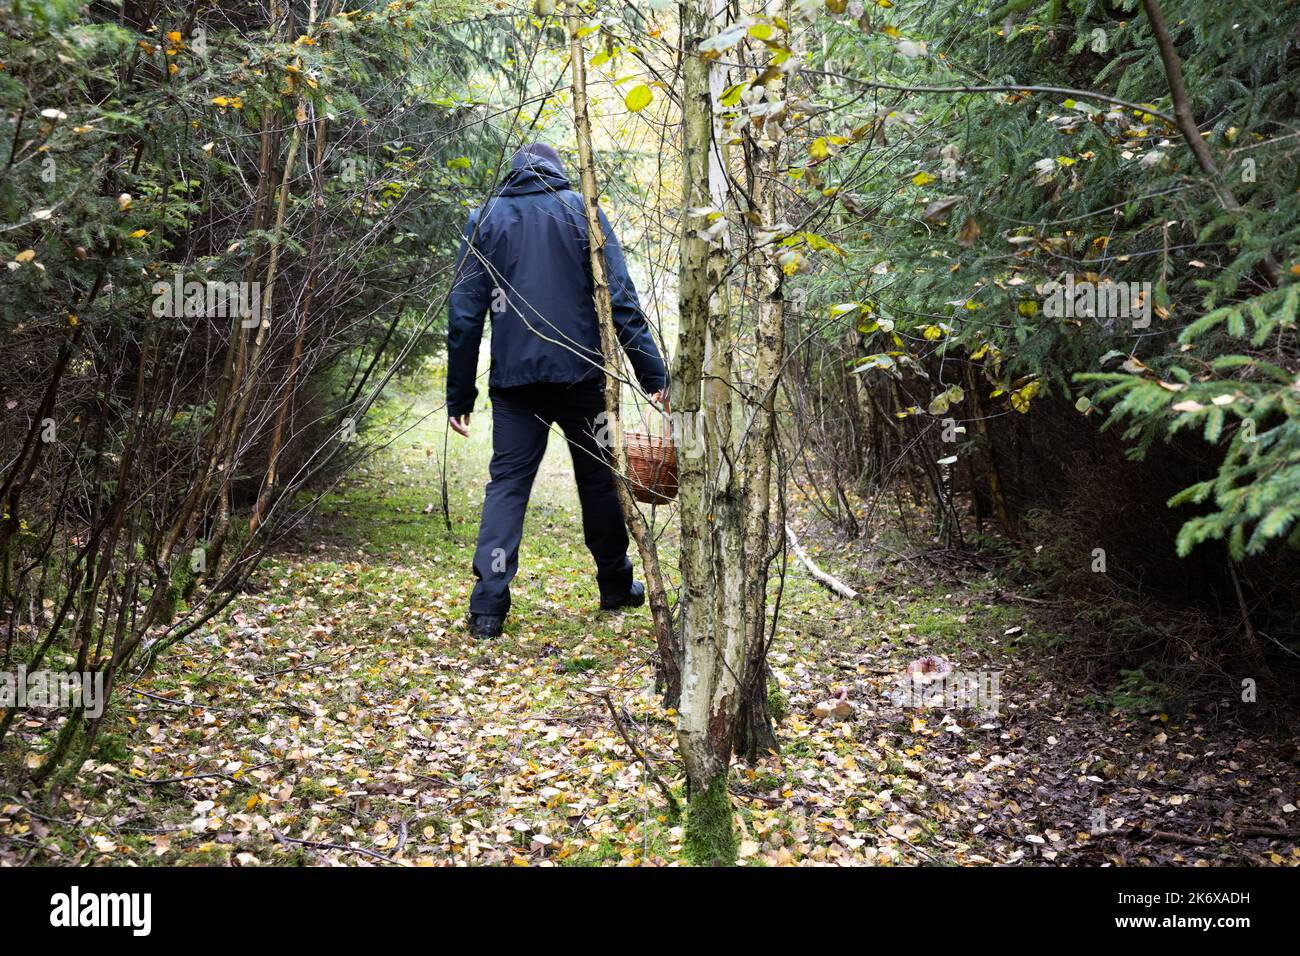 un uomo nella foresta di betulla alla ricerca di funghi con un cesto. Foto di alta qualità Foto Stock